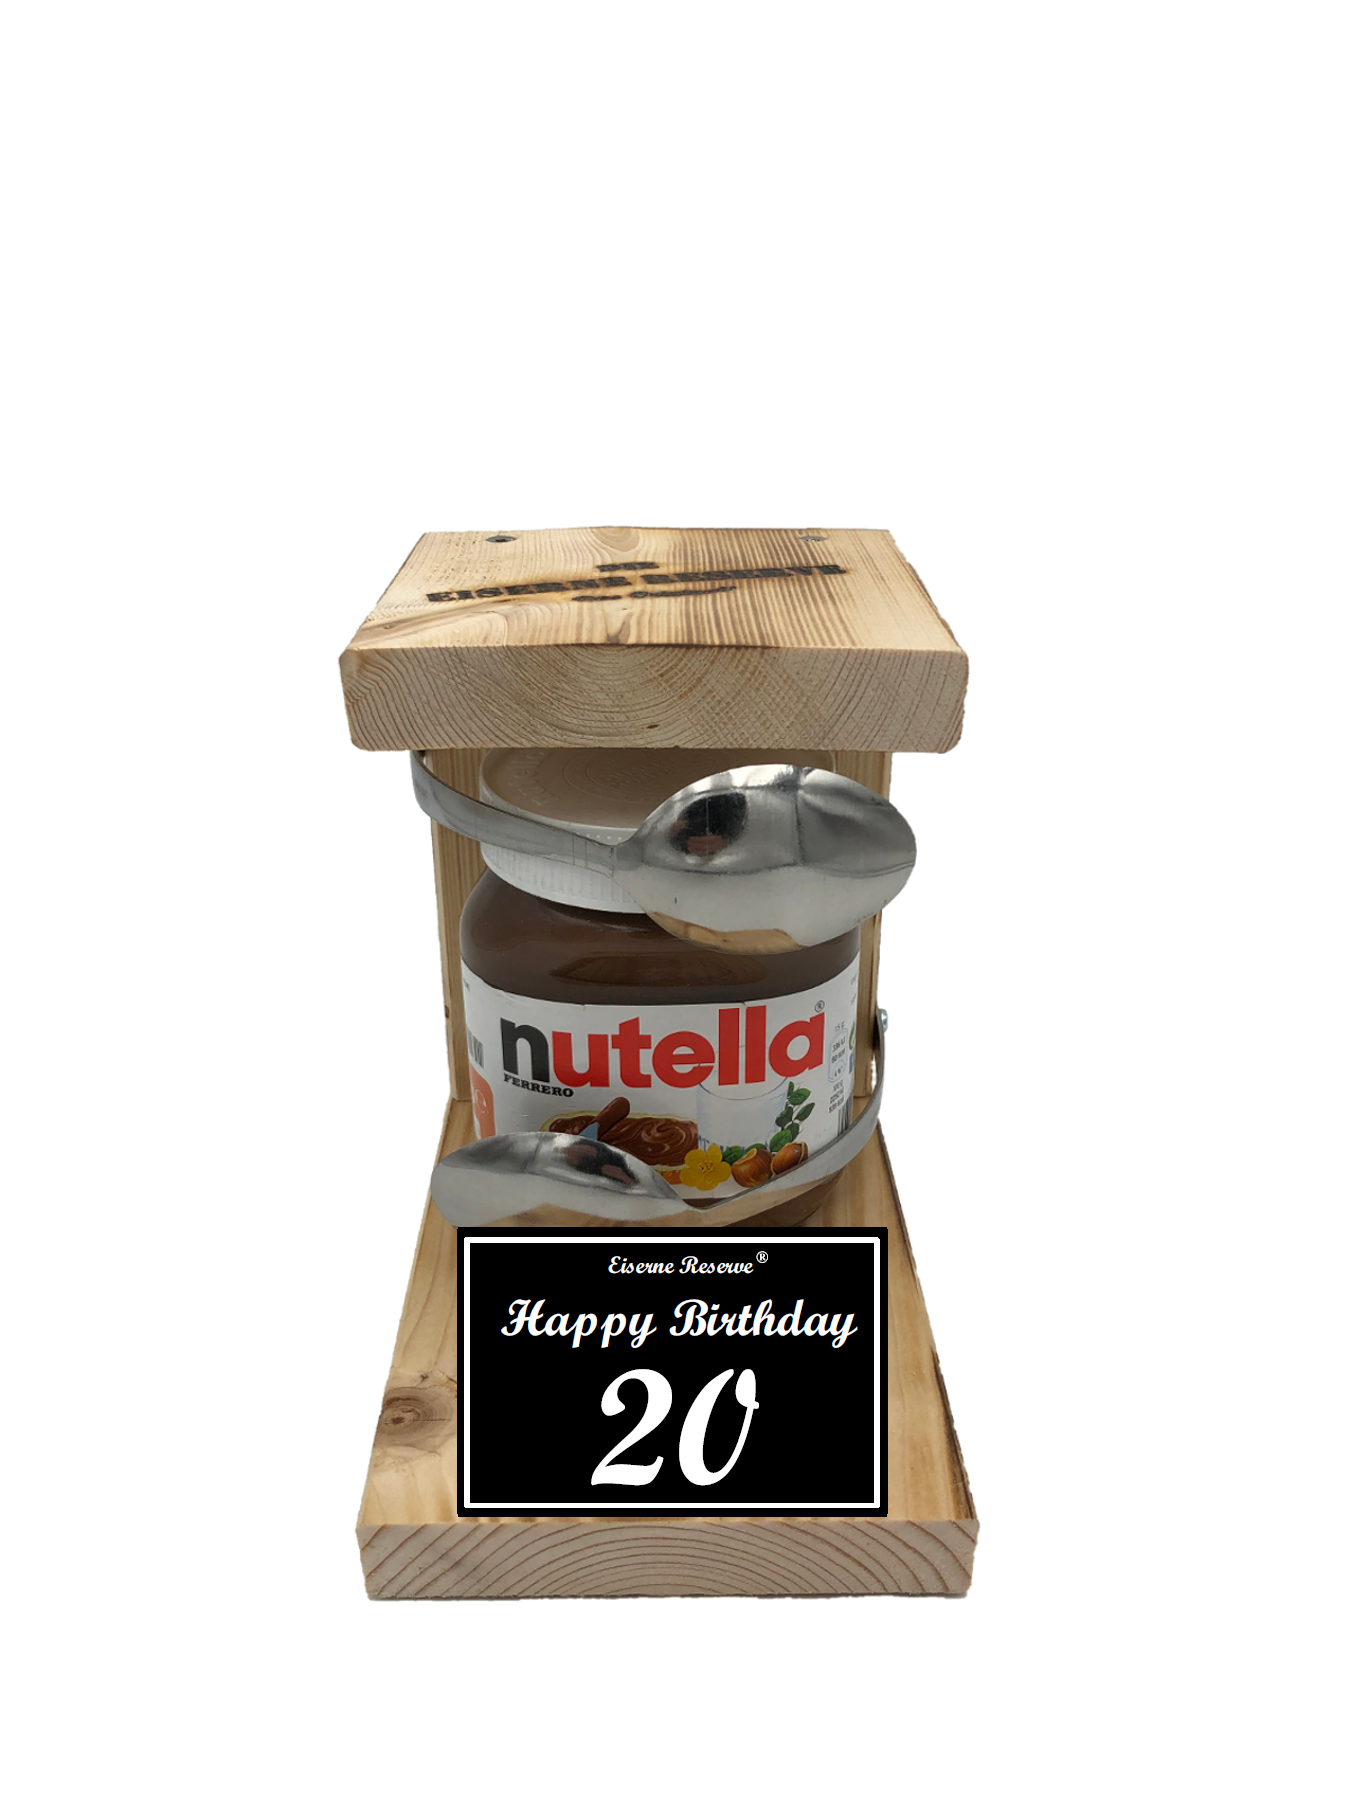 Geburtstag 20 - Eiserne Reserve Löffel Nutella - Geburtstag - Nutella Geschenk